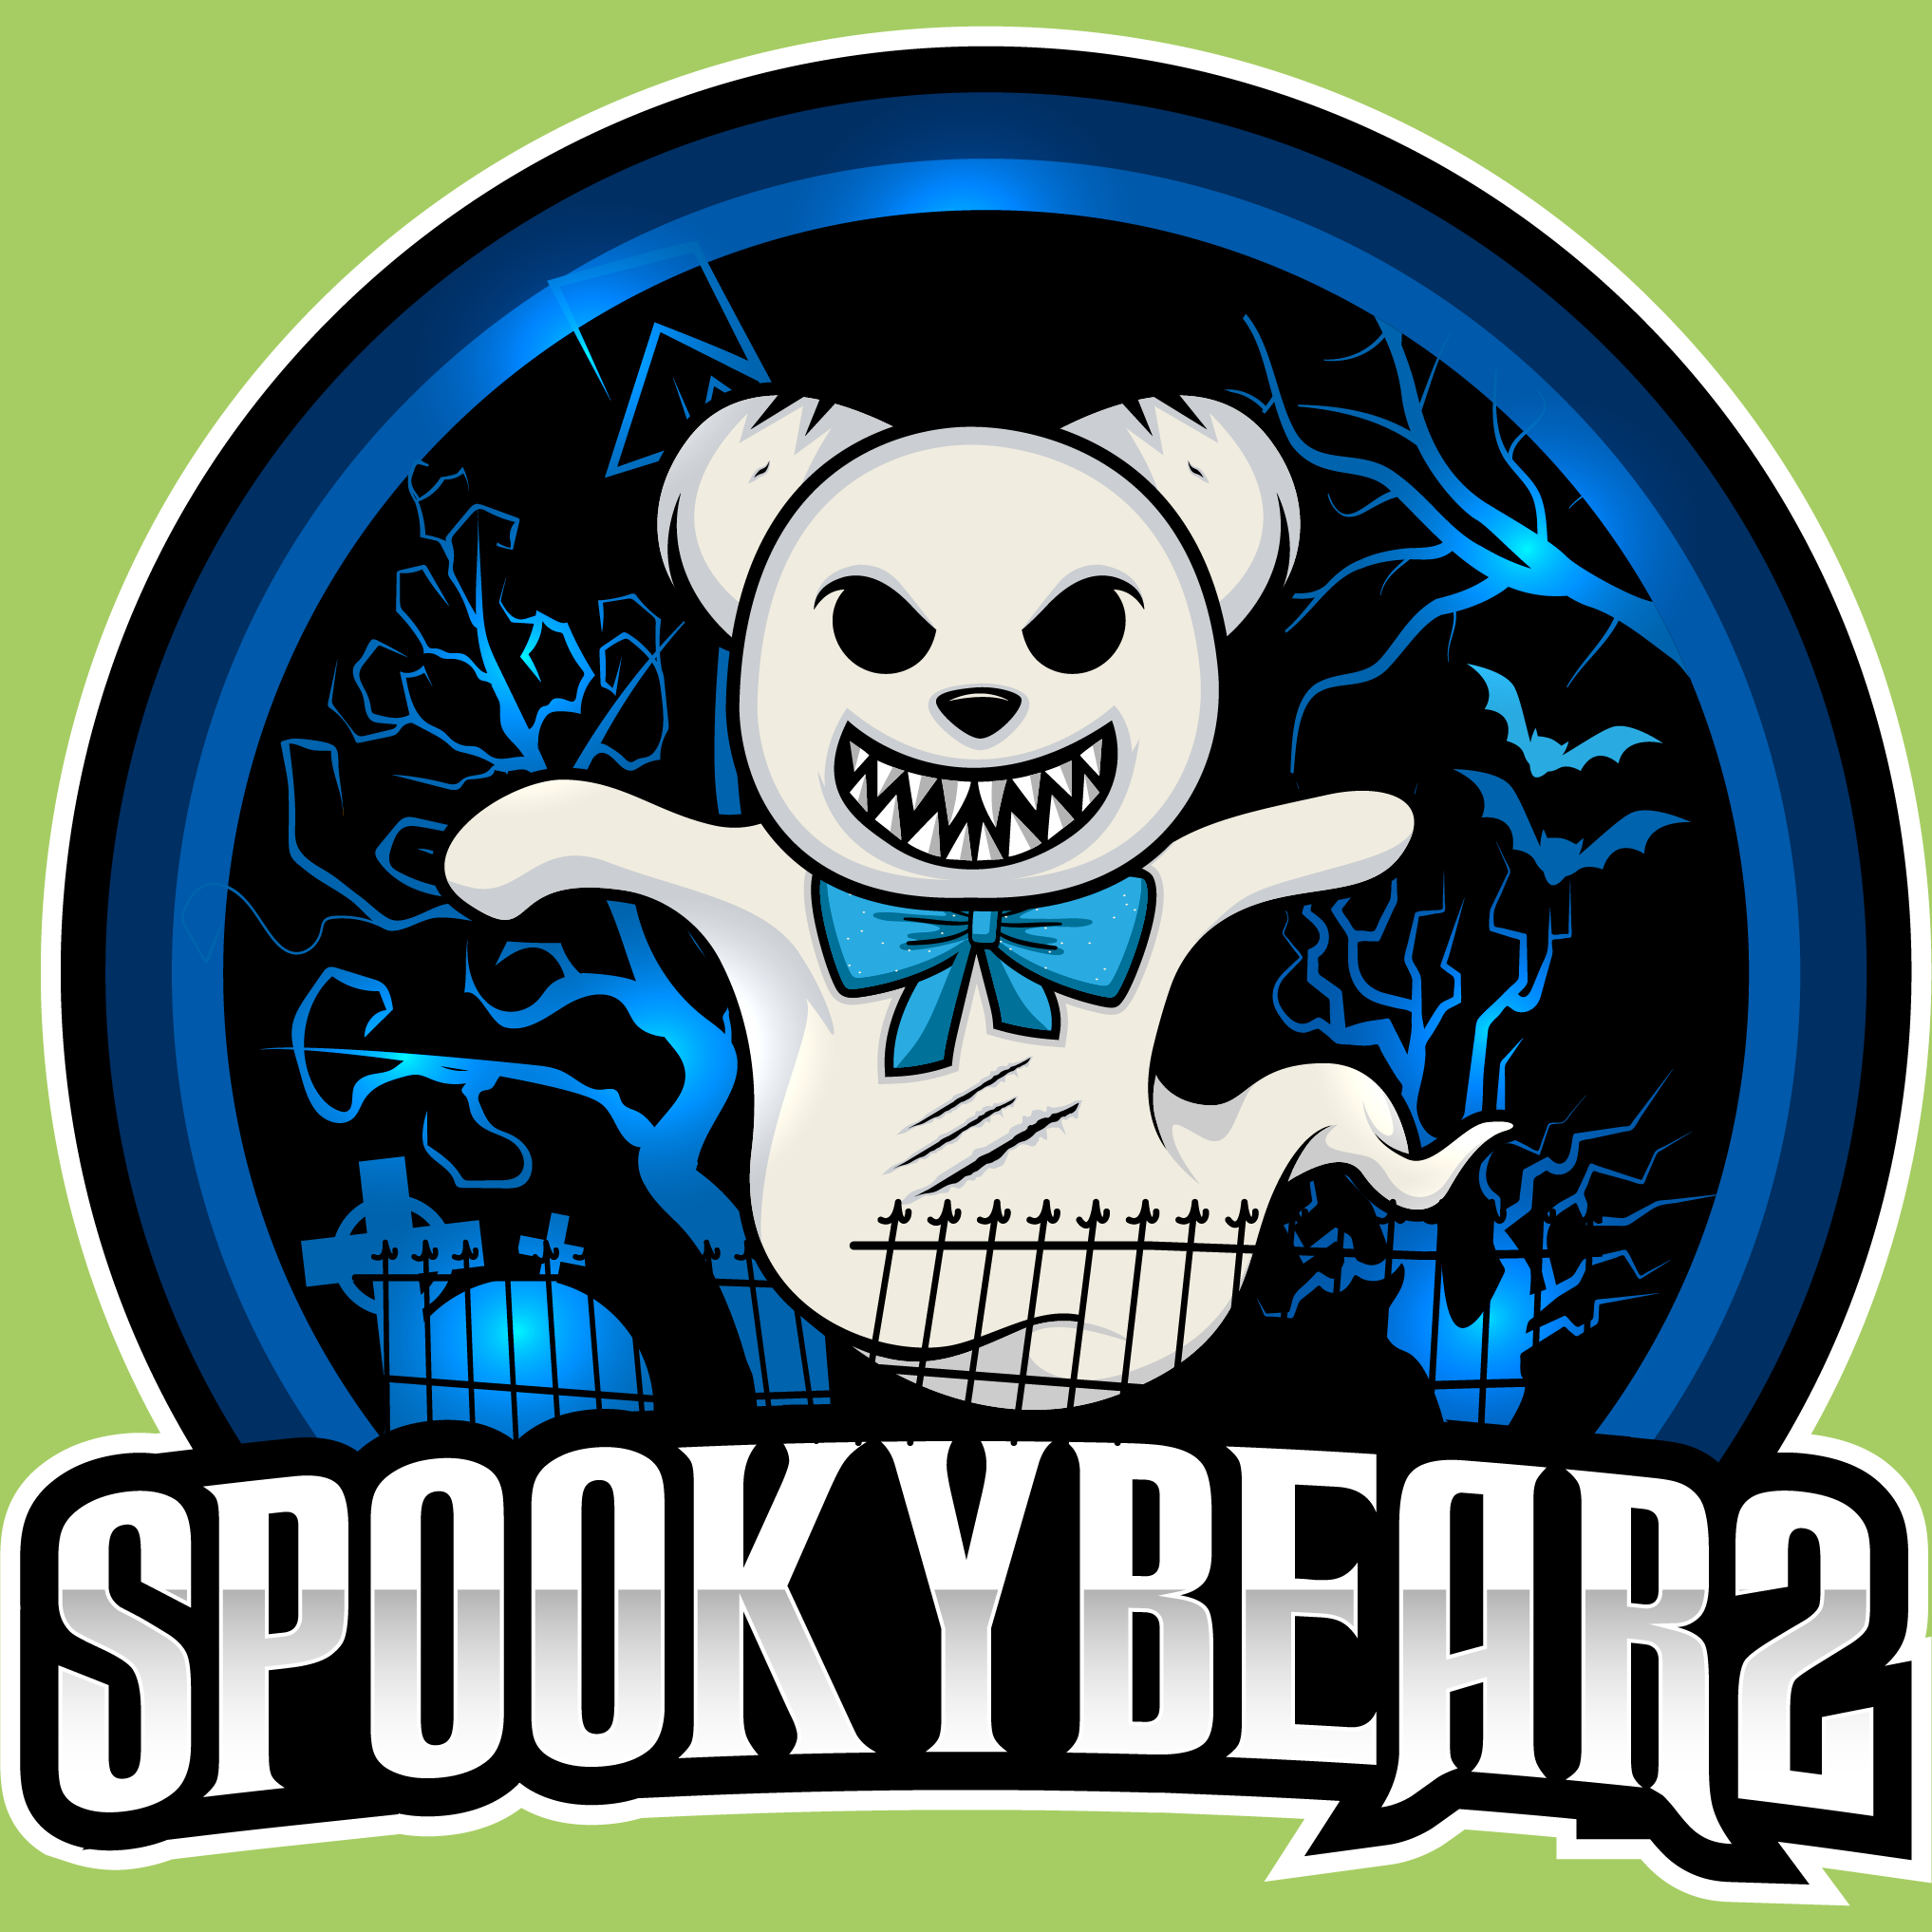 Avatar of SpookyBear2